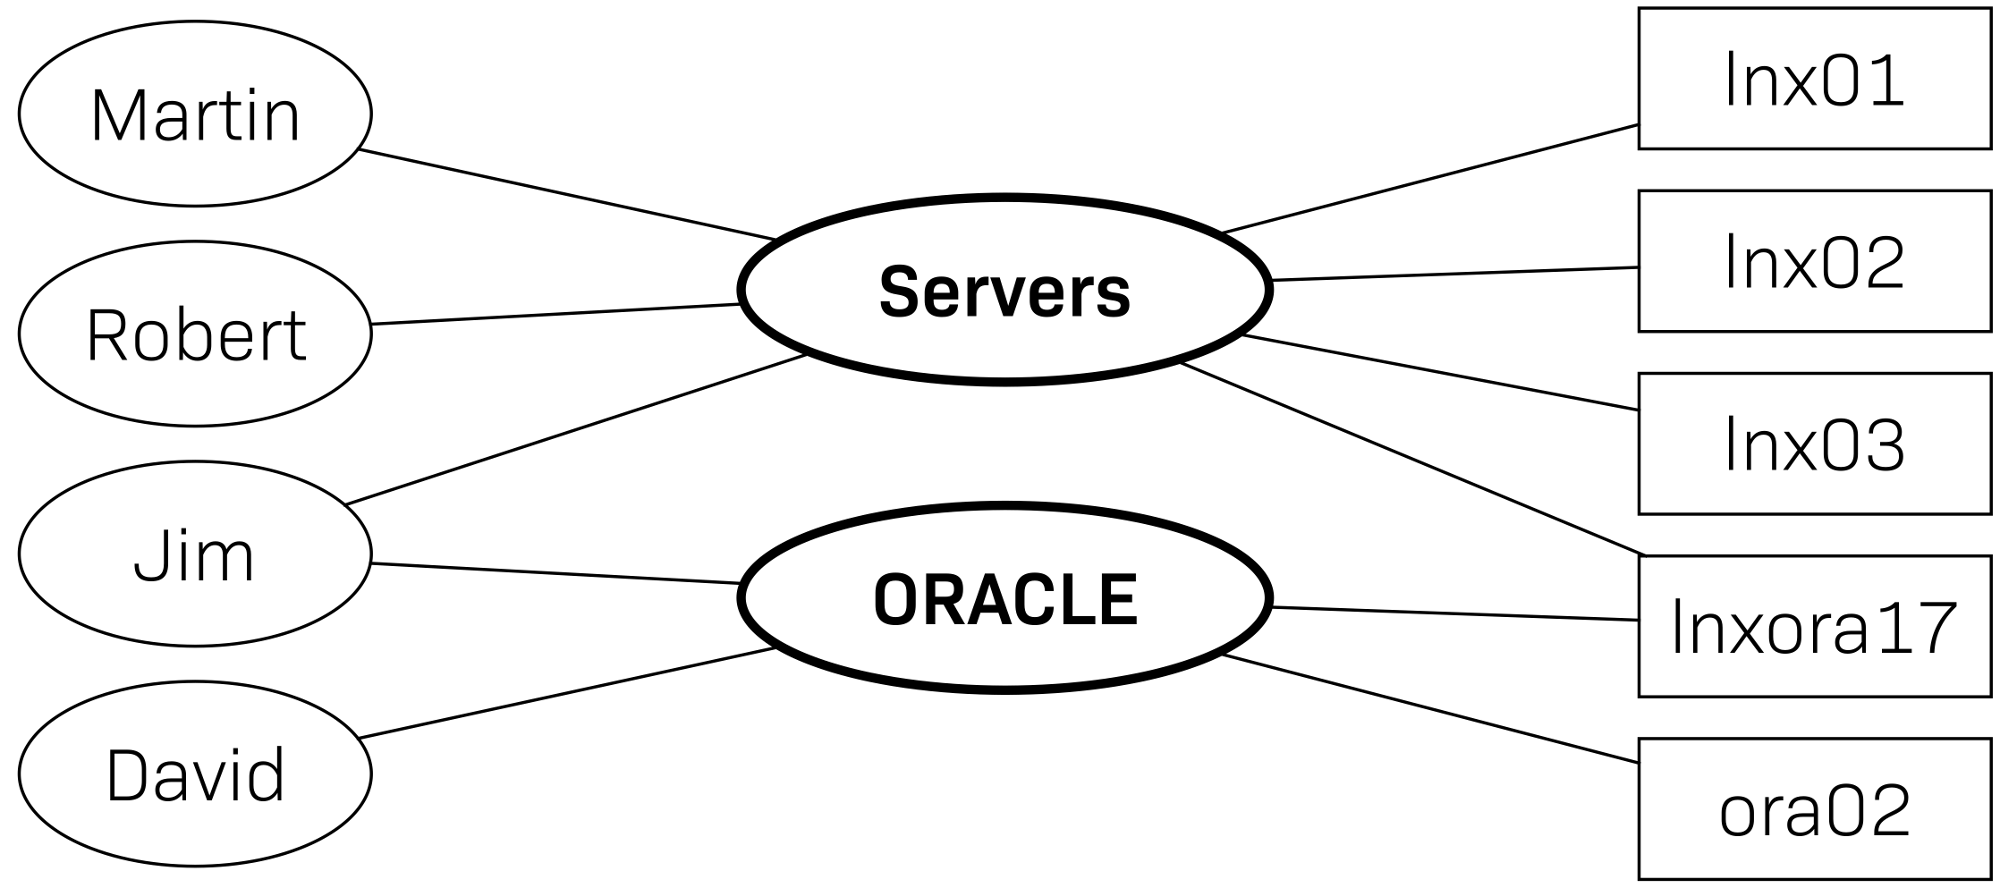 Illustration der Beziehung zwischen Benutzern, Kontaktgruppen und Hosts/Services.